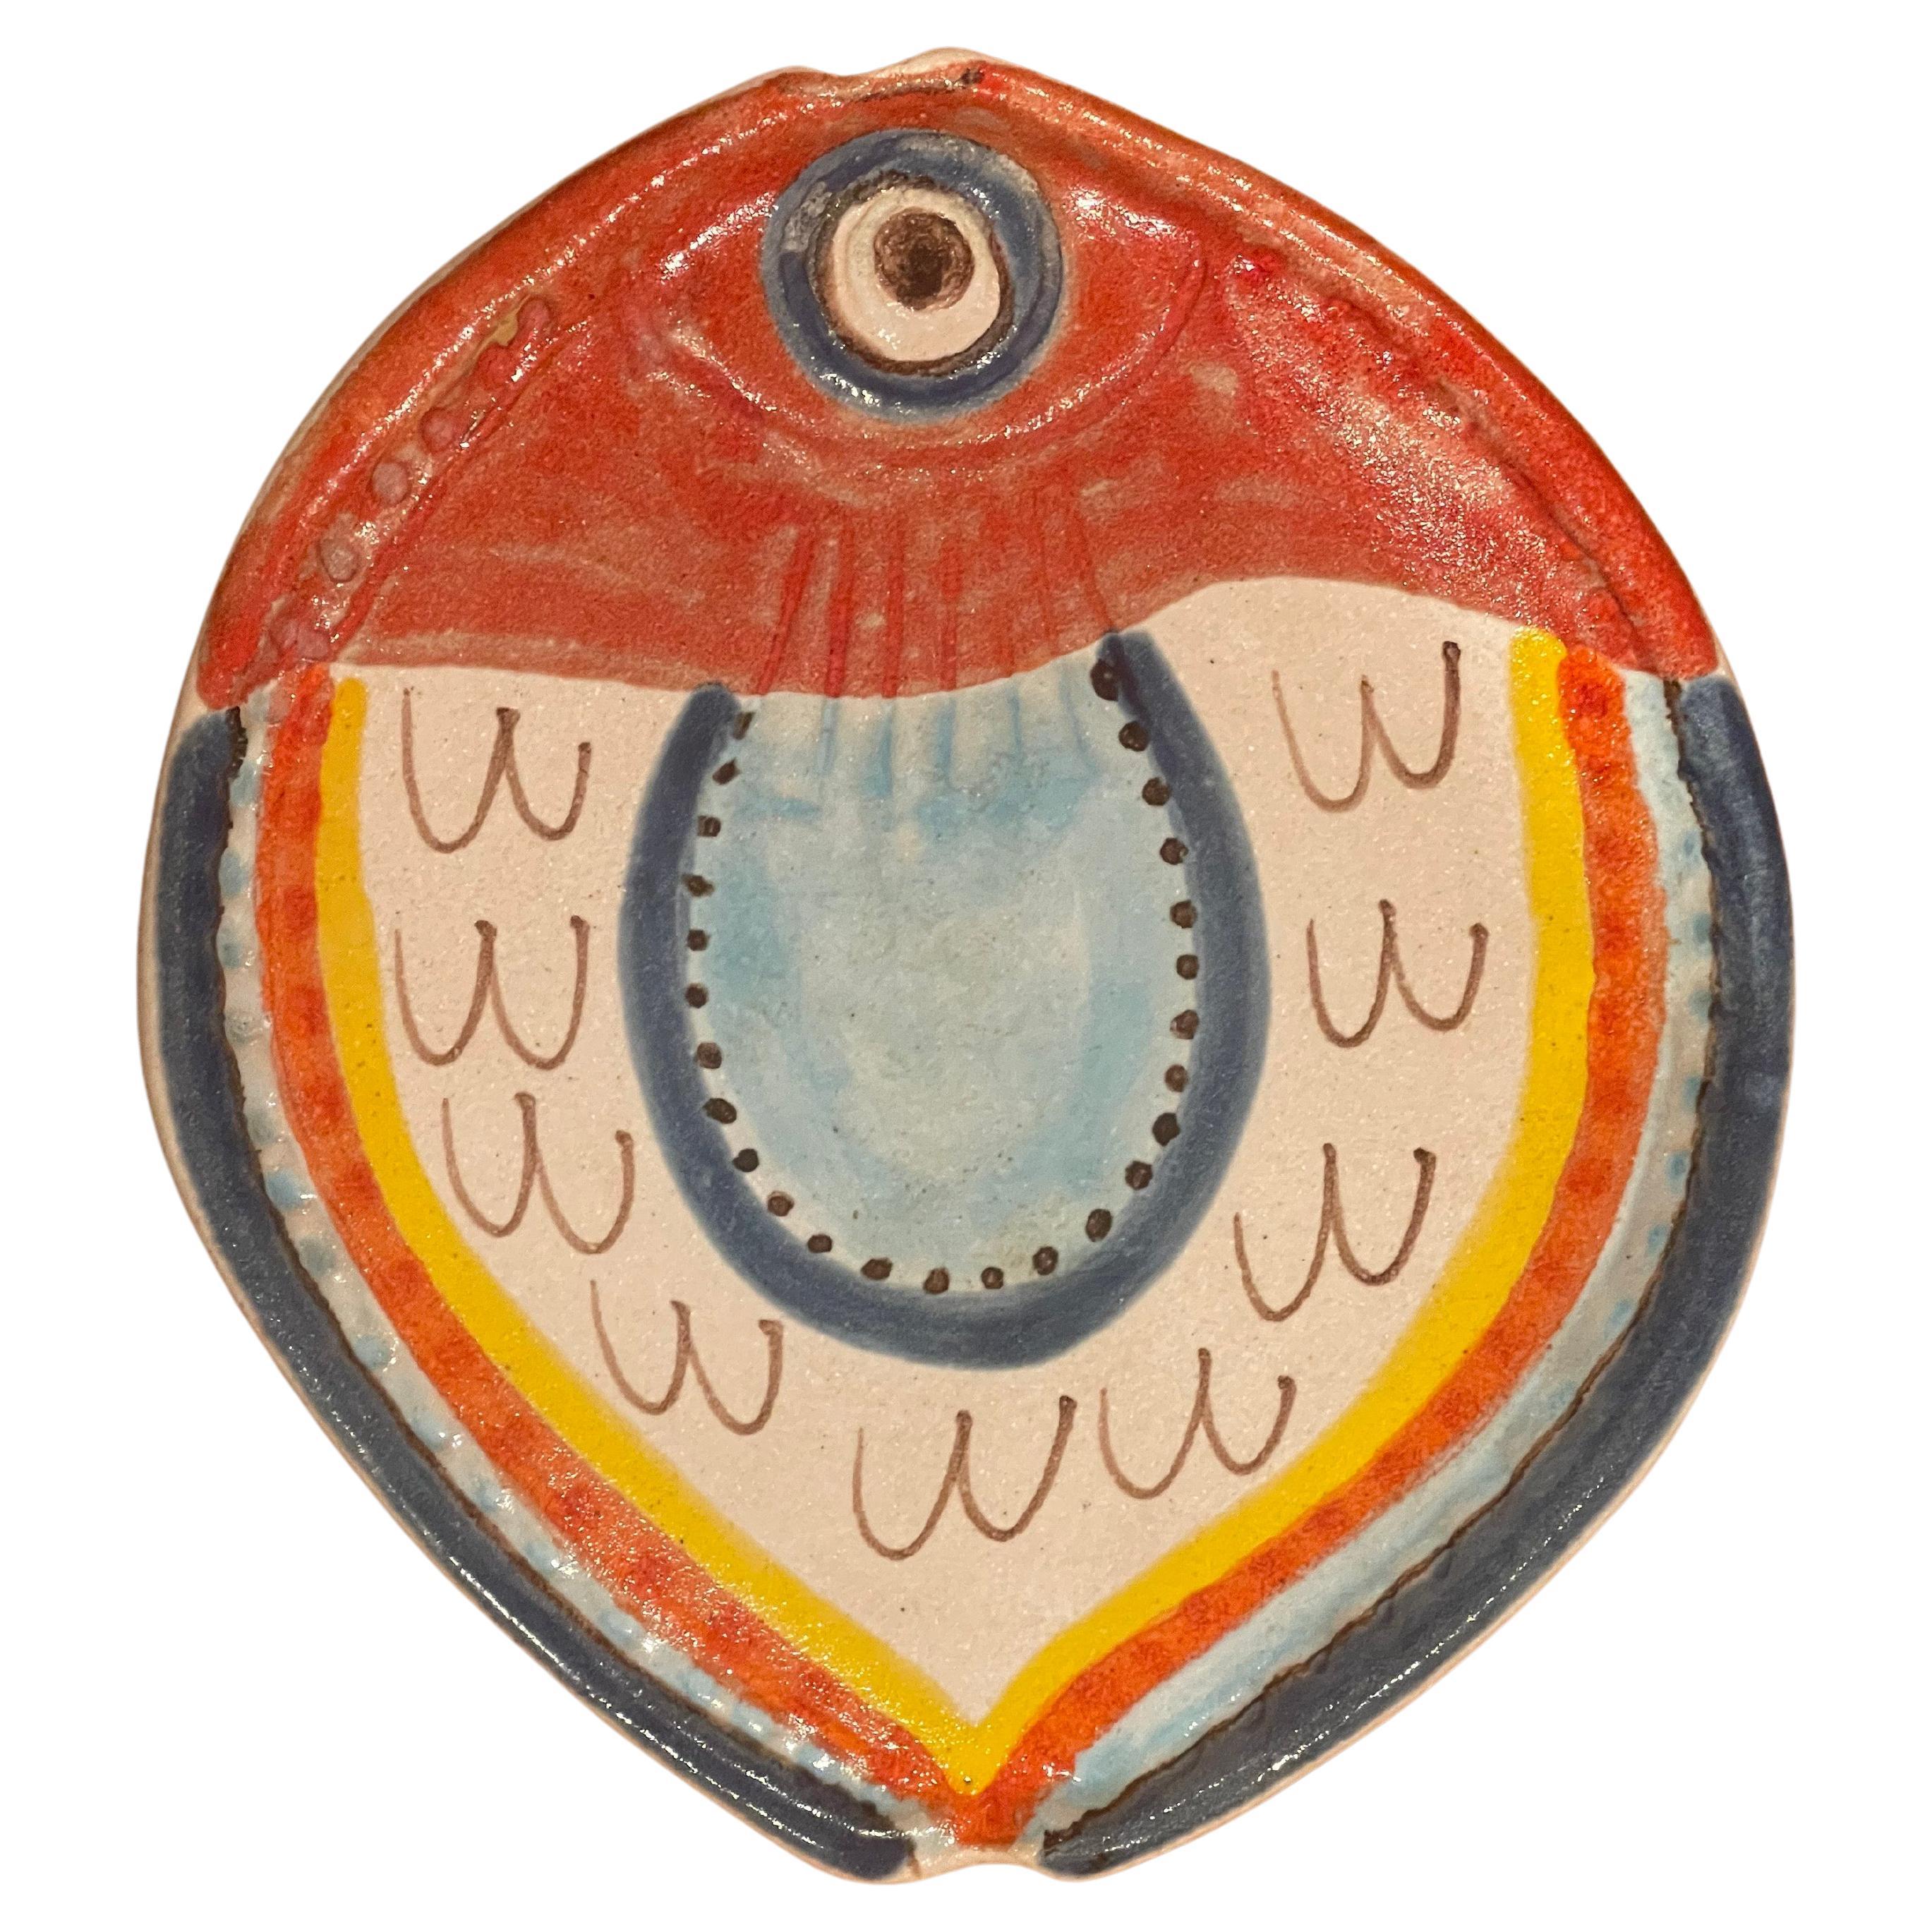 Magnifique assiette à poisson décorative en céramique italienne peinte à la main par DeSimone, vers 1964. La plaque est en excellent état, sans éclats ni fissures, avec une usure très légère. Elle est signée et numérotée et mesure 8,5